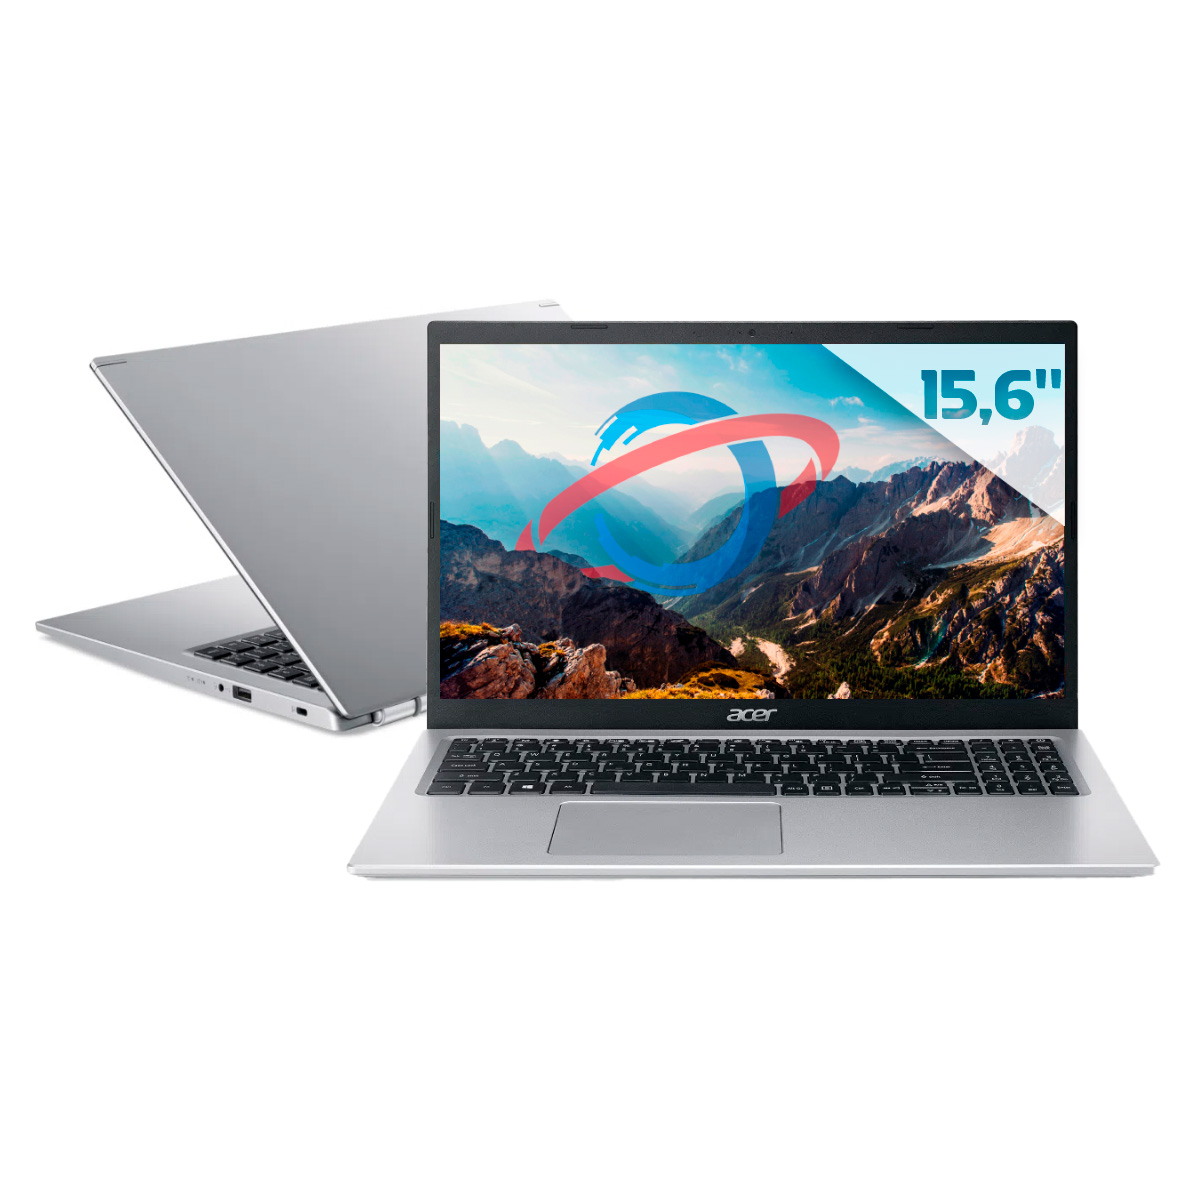 Notebook Acer Aspire A515-45G-R46X - Ryzen 7 5700U, RAM 8GB, SSD 512GB, Radeon RX 640, Tela 15.6